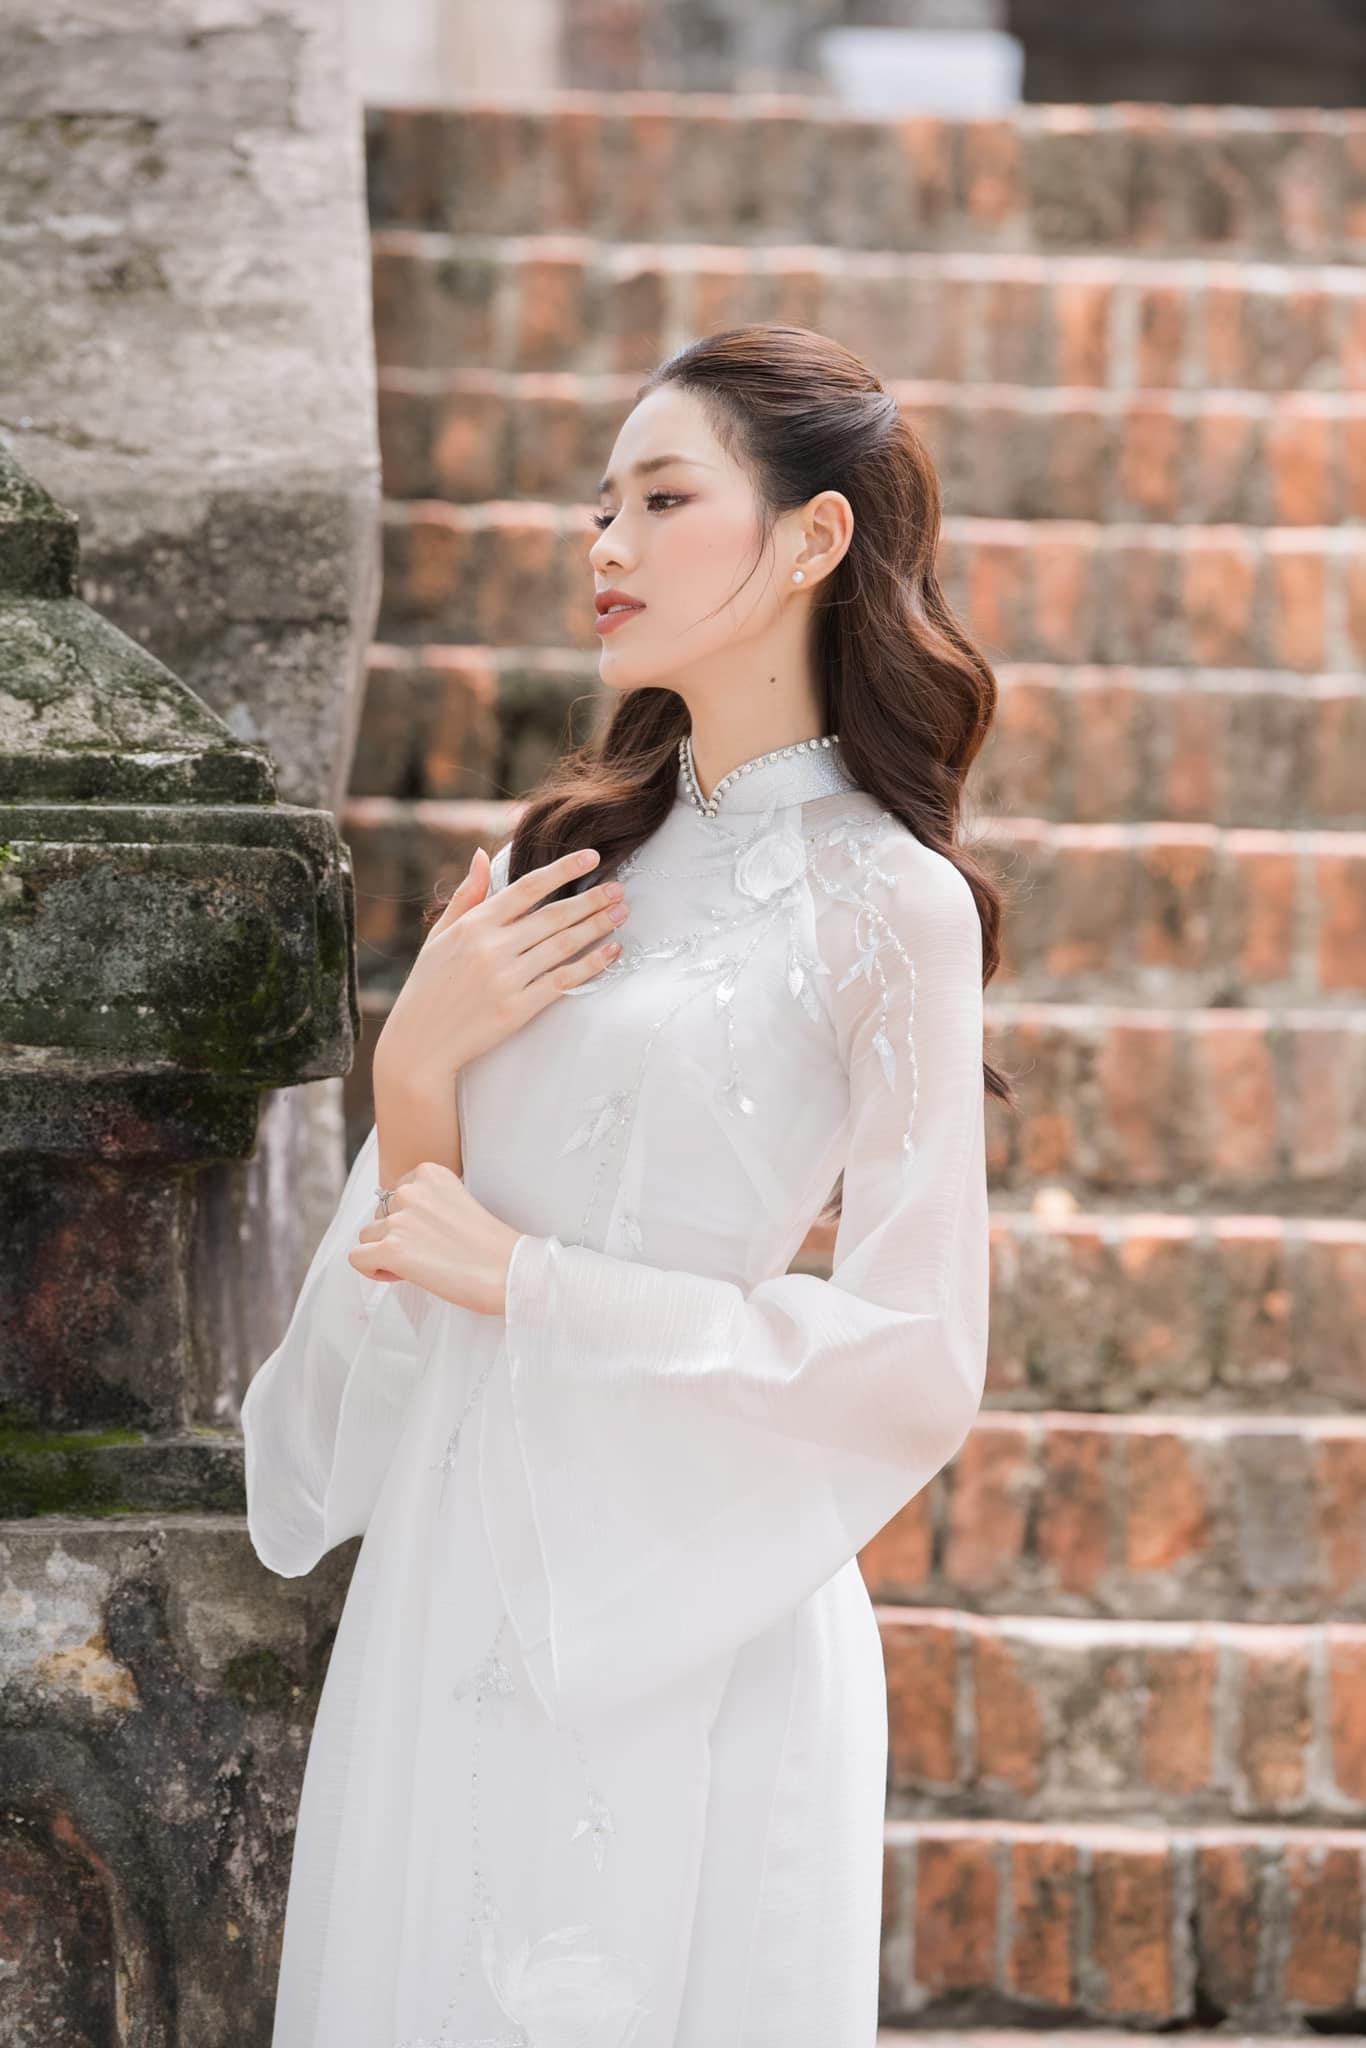 Hoa hậu Đỗ Thị Hà đẹp thuần khiết với áo dài trắng-3